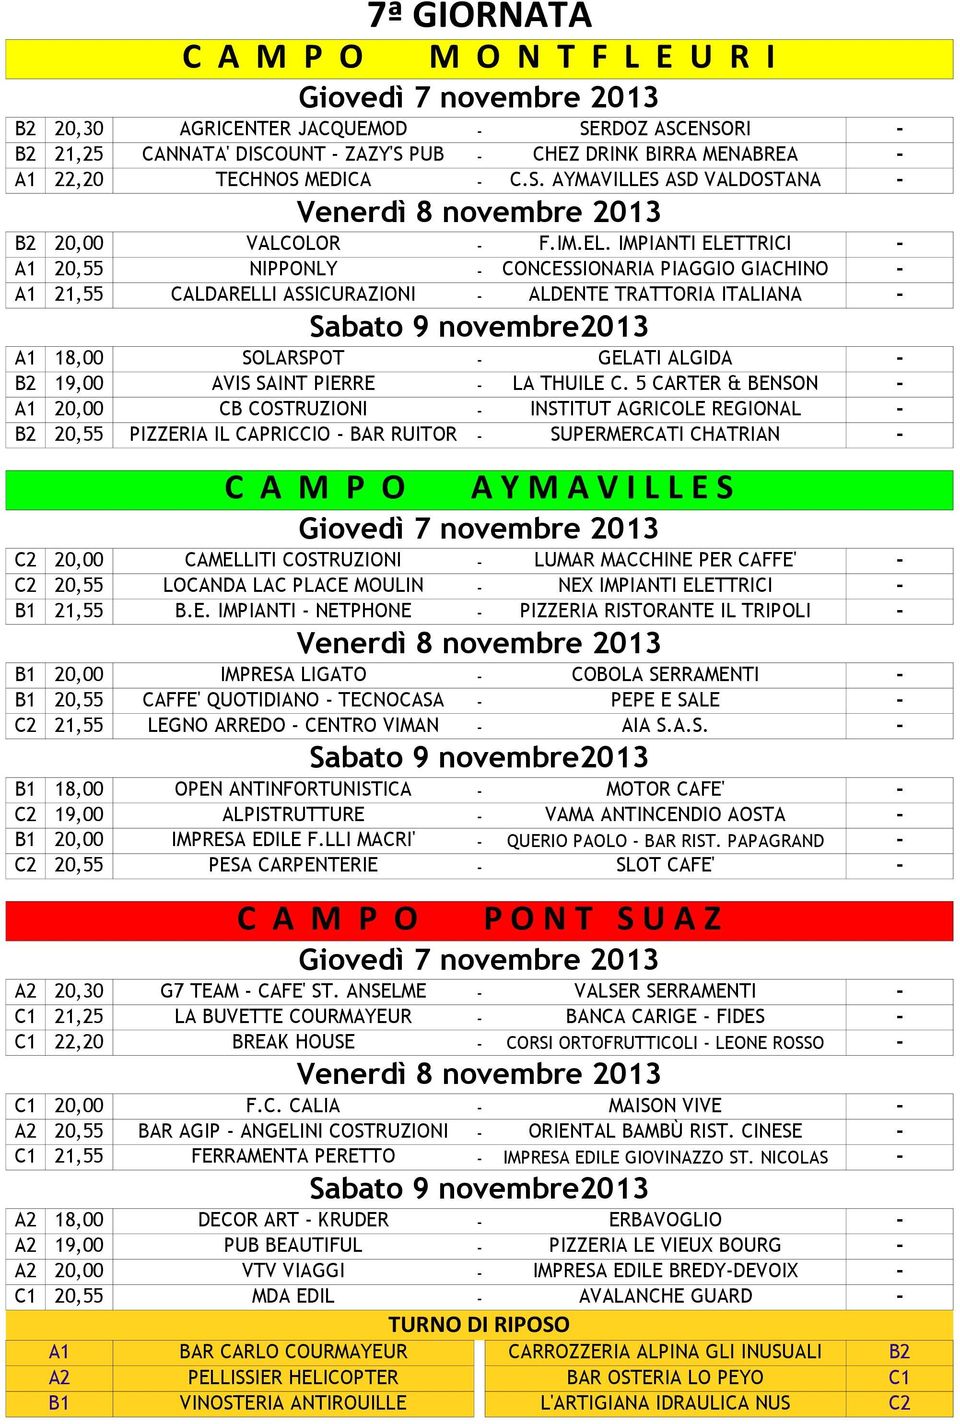 IMPIANTI ELETTRICI - A1 20,55 NIPPONLY - CONCESSIONARIA PIAGGIO GIACHINO - A1 21,55 CALDARELLI ASSICURAZIONI - ALDENTE TRATTORIA ITALIANA - Sabato 9 novembre2013 A1 18,00 SOLARSPOT - GELATI ALGIDA -